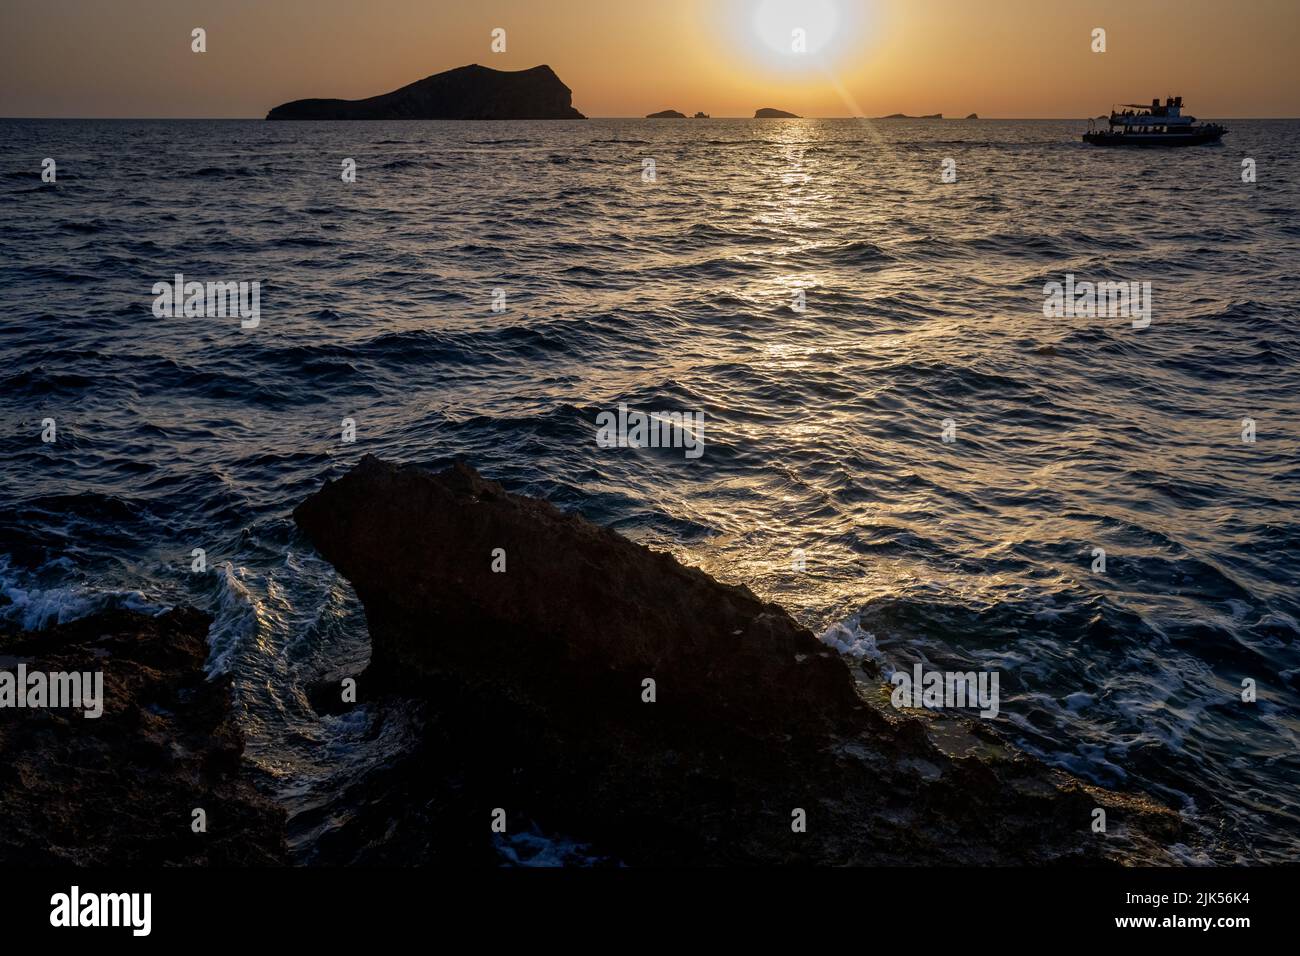 Magnifique et chaleureux coucher de soleil dans la mer Méditerranée de la côte d'Ibiza, soleil se cachant à l'horizon. Banque D'Images